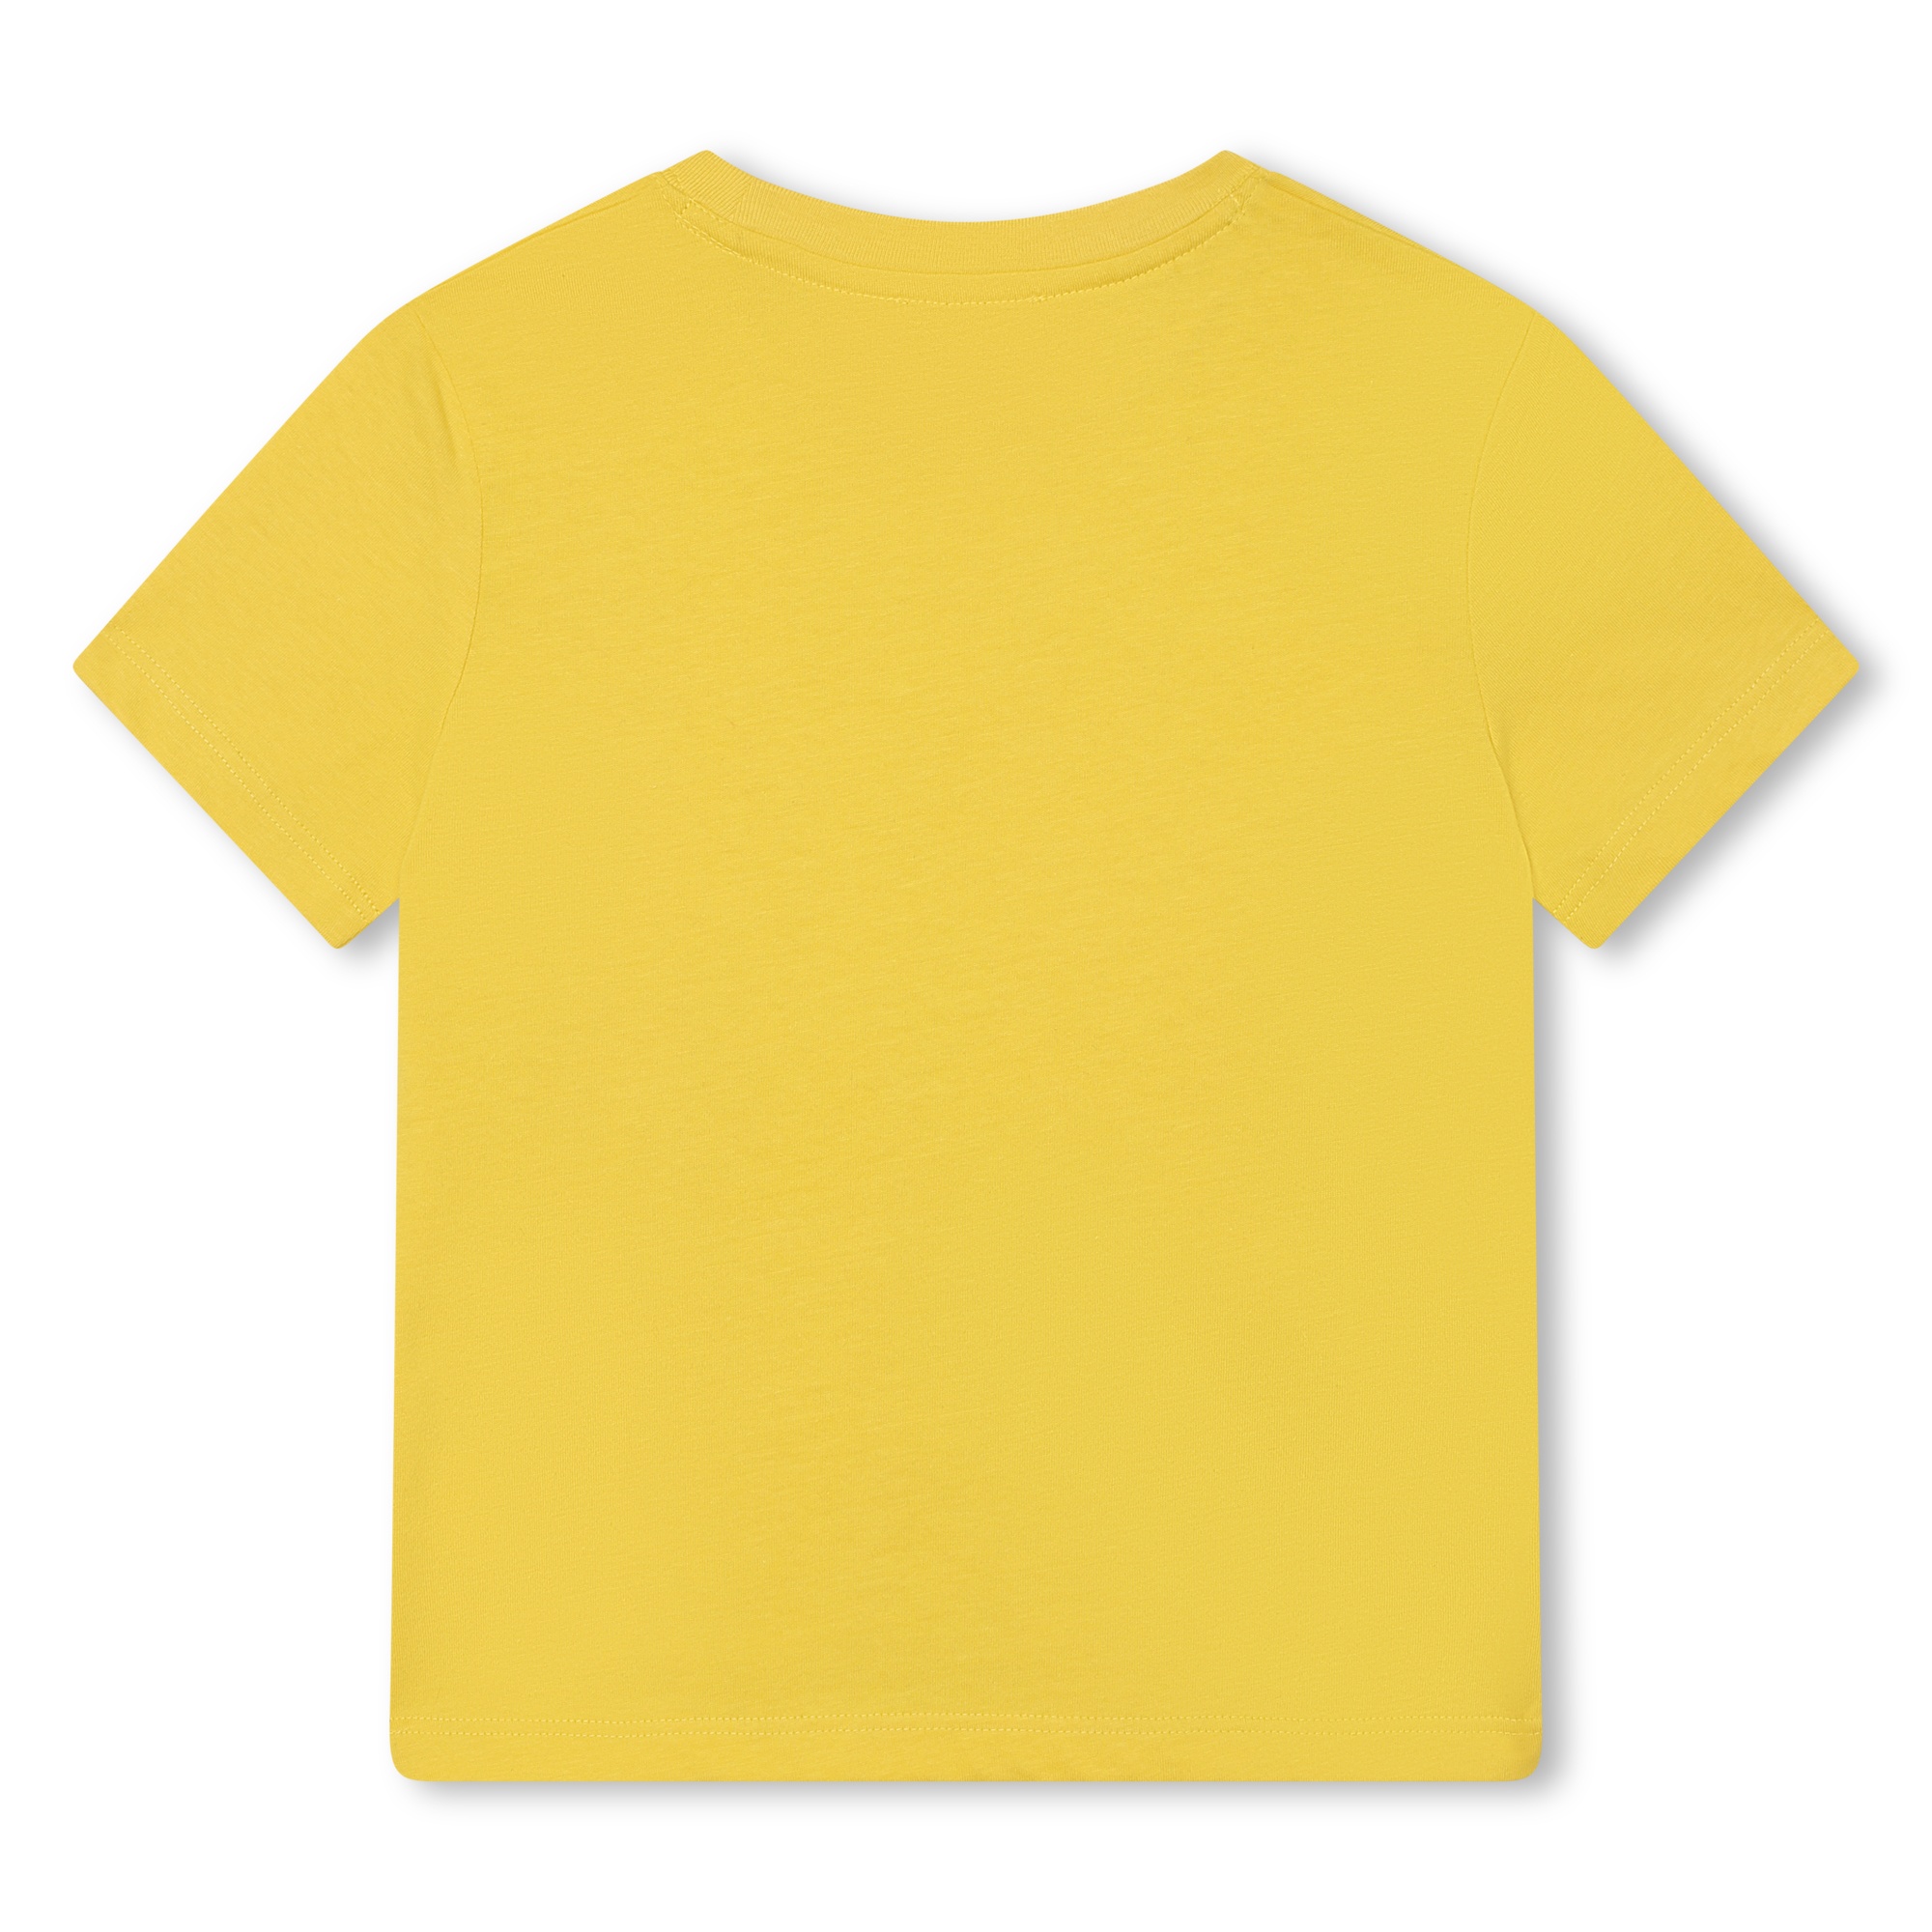 T-shirt finition peau de pêche MARC JACOBS pour UNISEXE